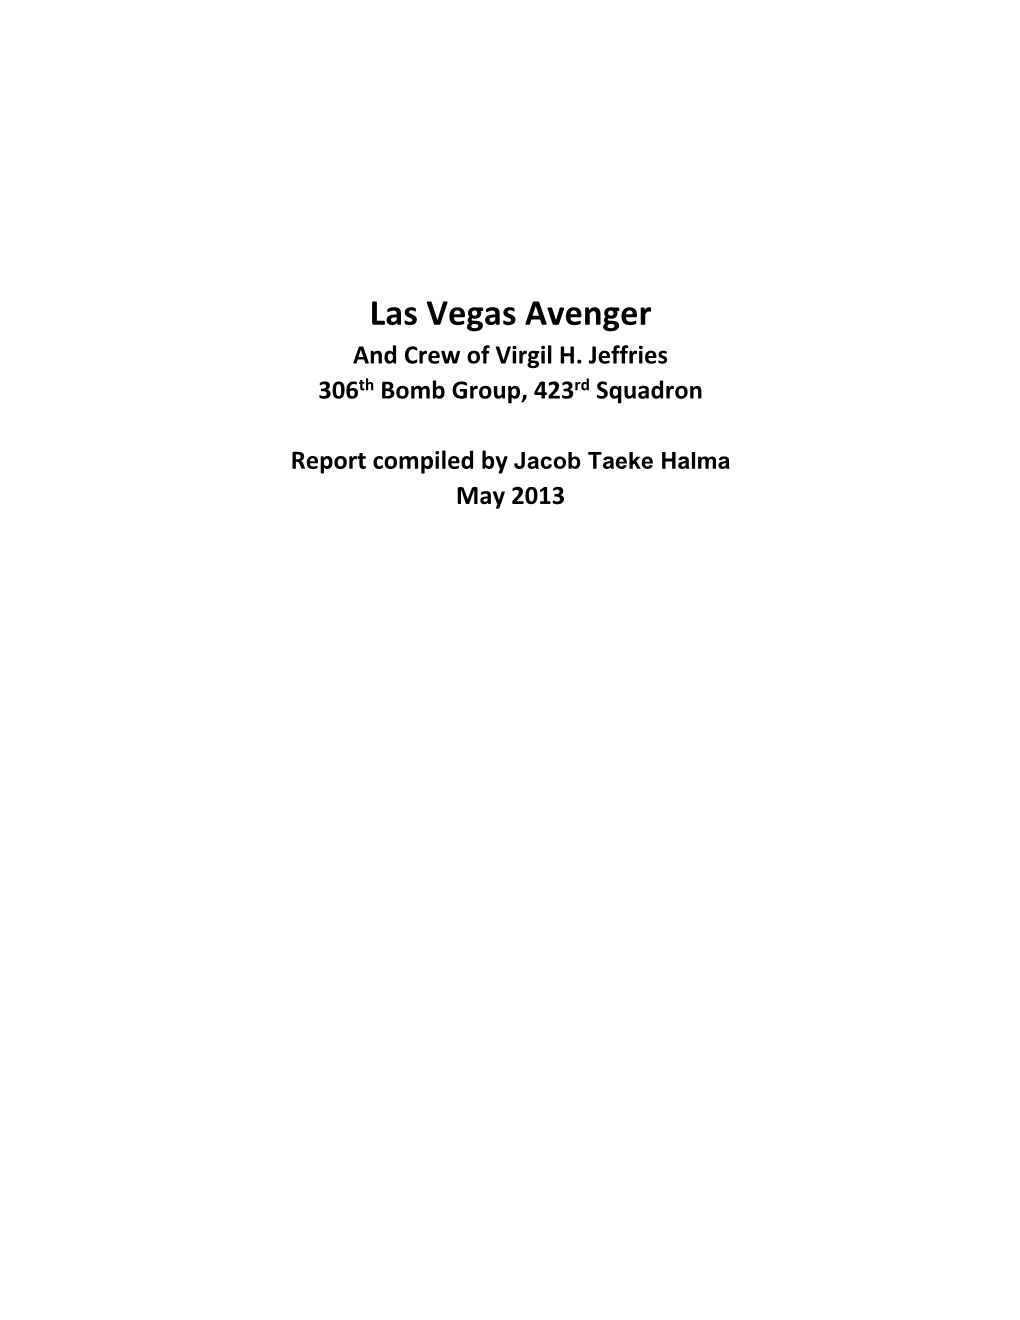 Las Vegas Avenger and Crew of Virgil H